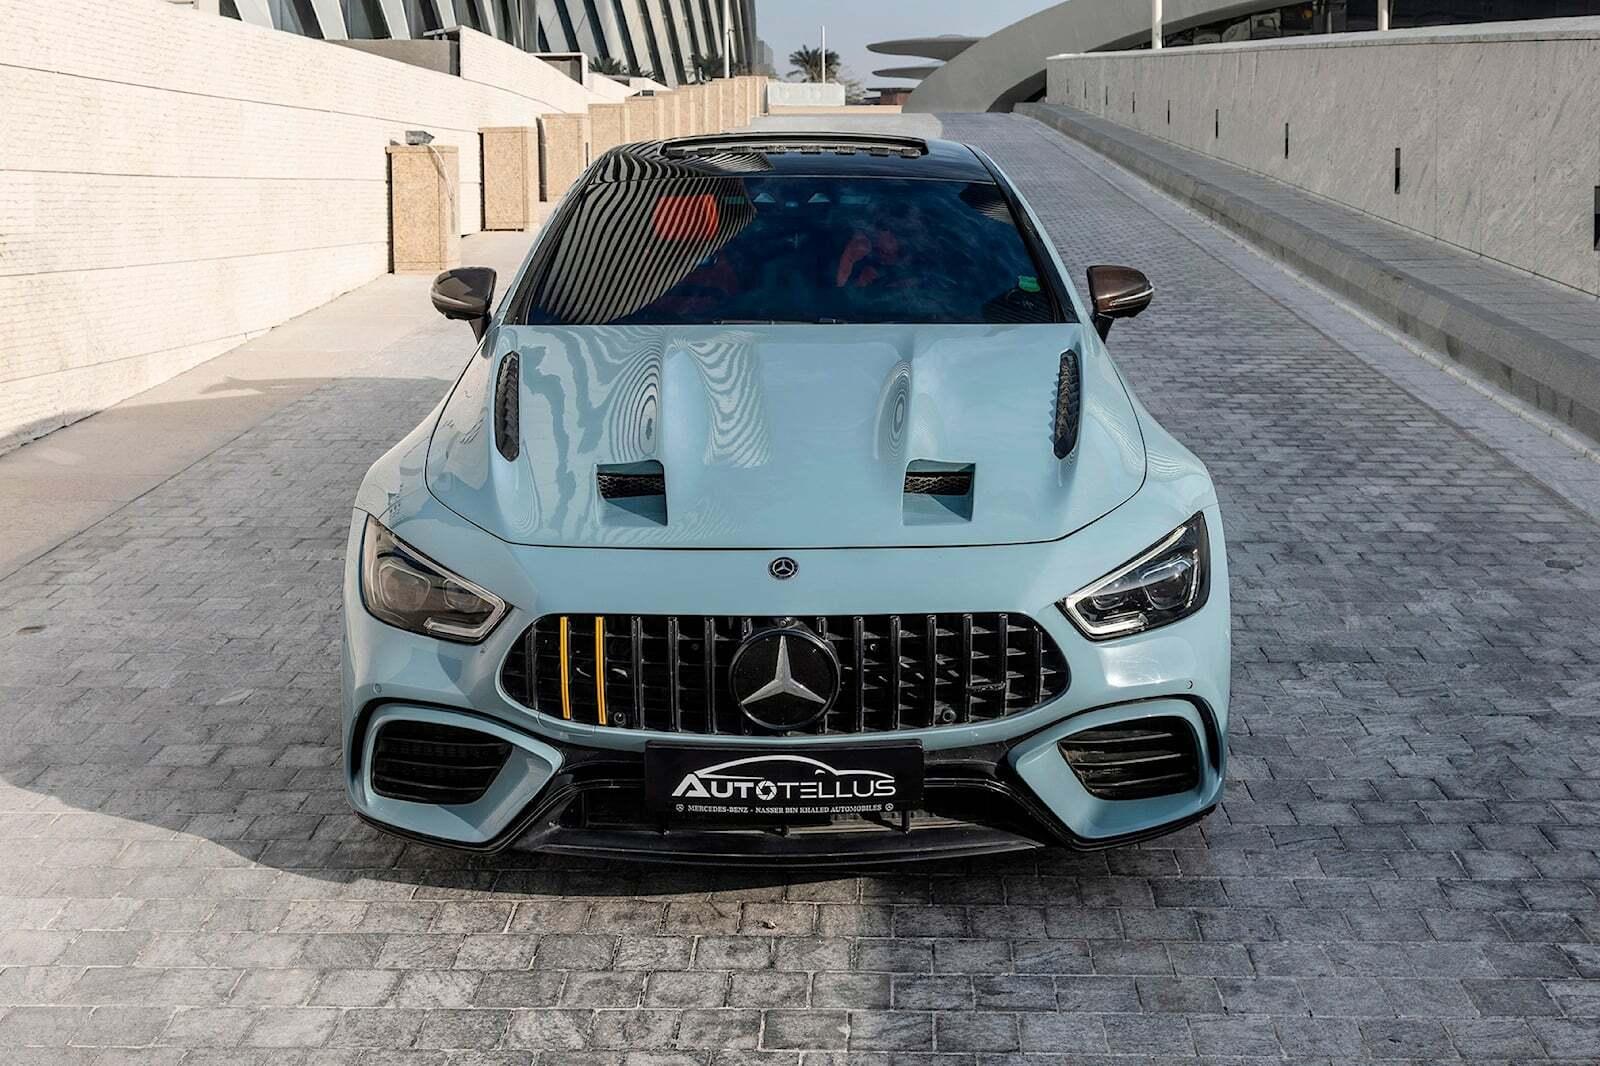 Šialenosť z Kataru: Mercedes si majiteľ upravil na jedno z najvýkonnejších áut sveta